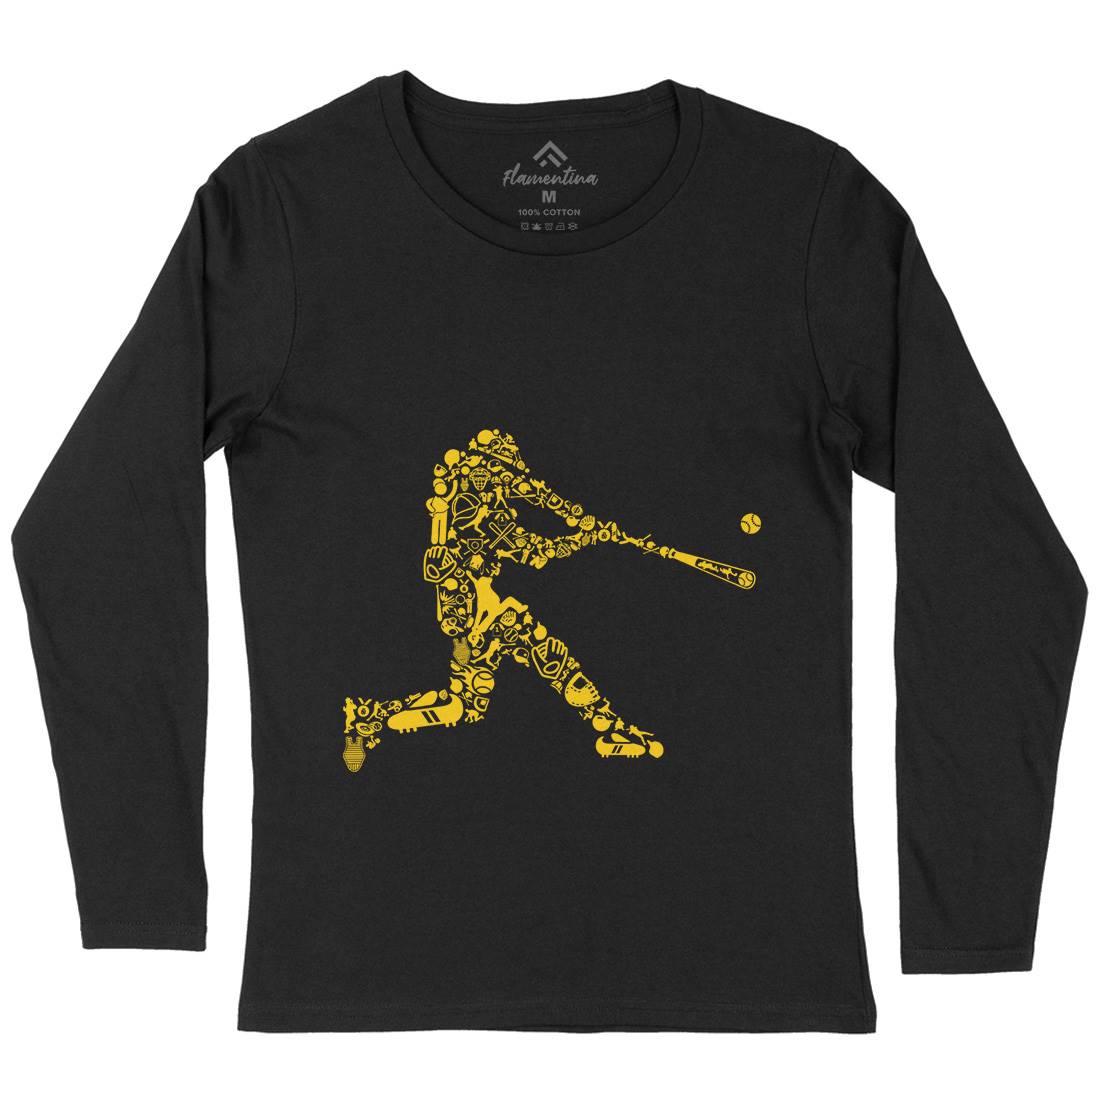 Baseball Player Womens Long Sleeve T-Shirt Sport B007